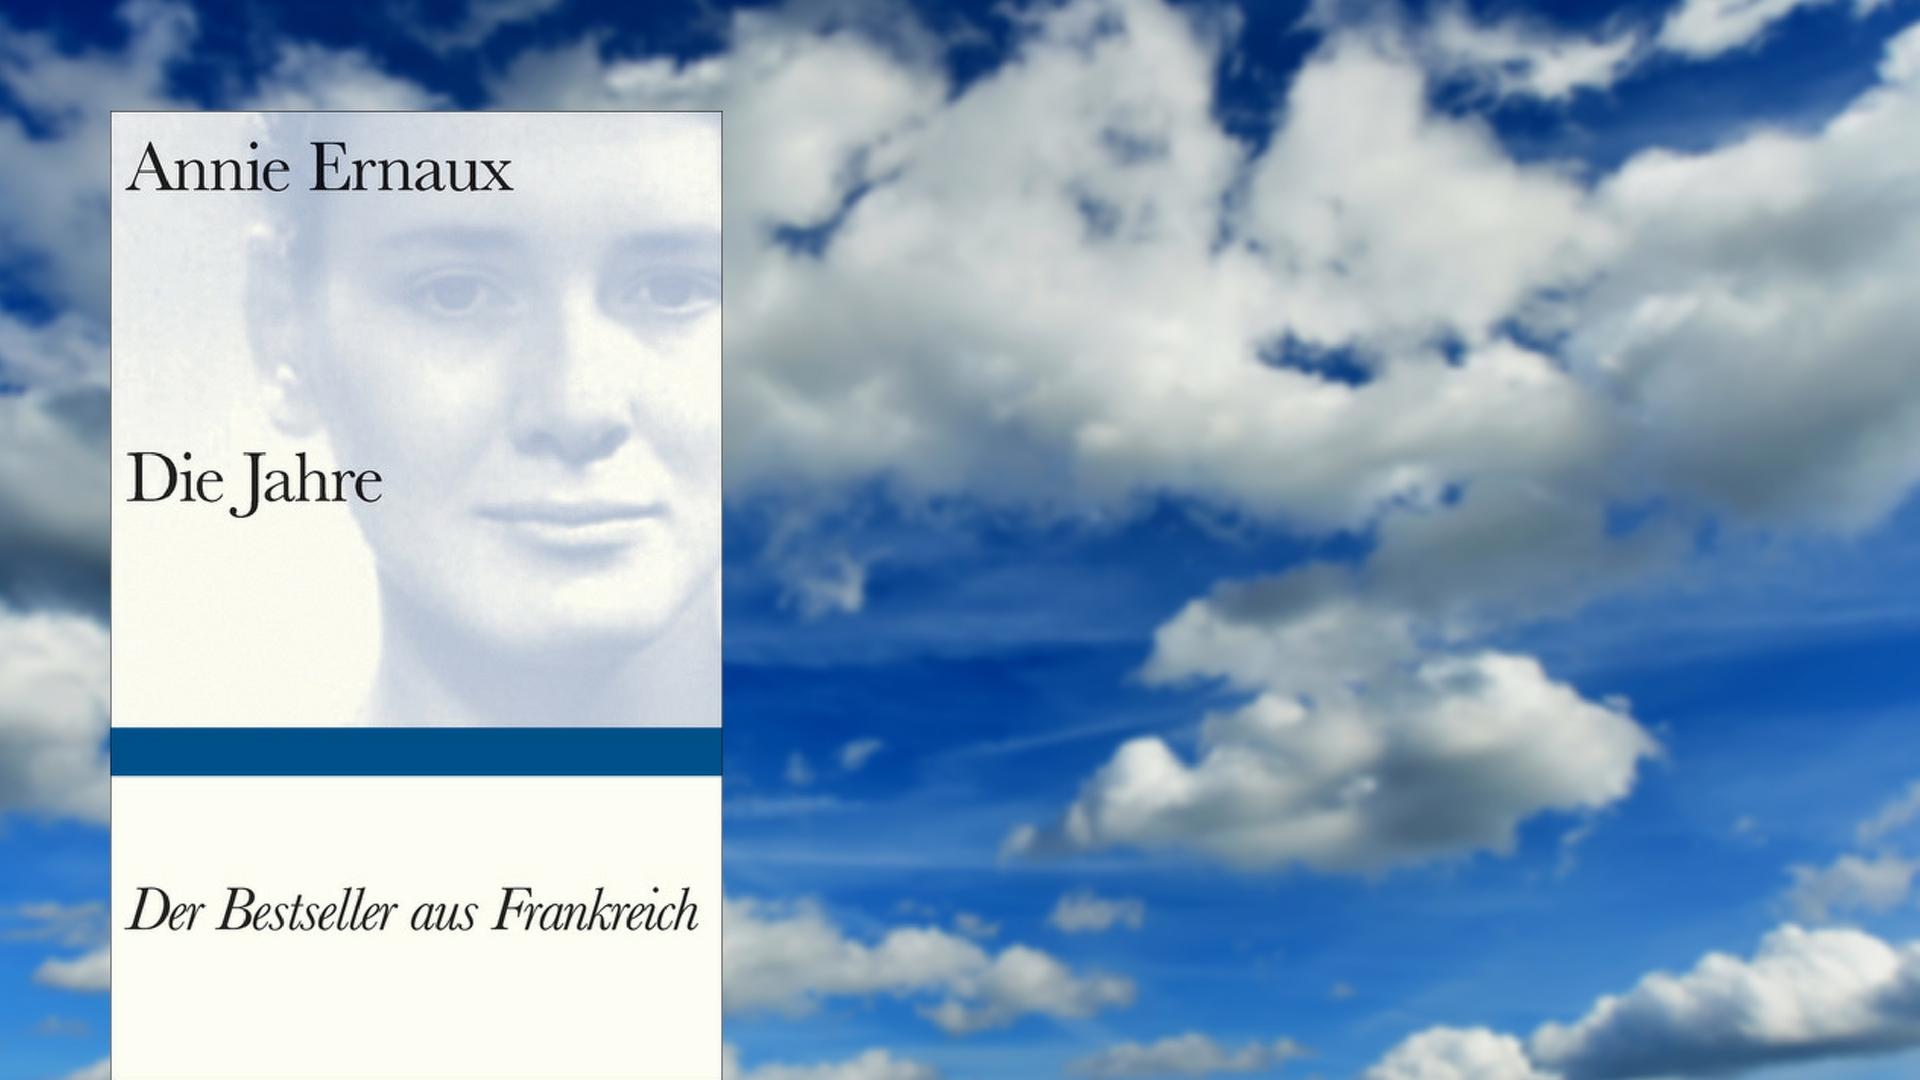 Buchcover "Die Jahre" von Annie Ernaux, im Hintergrund ein Wolkenhimmel